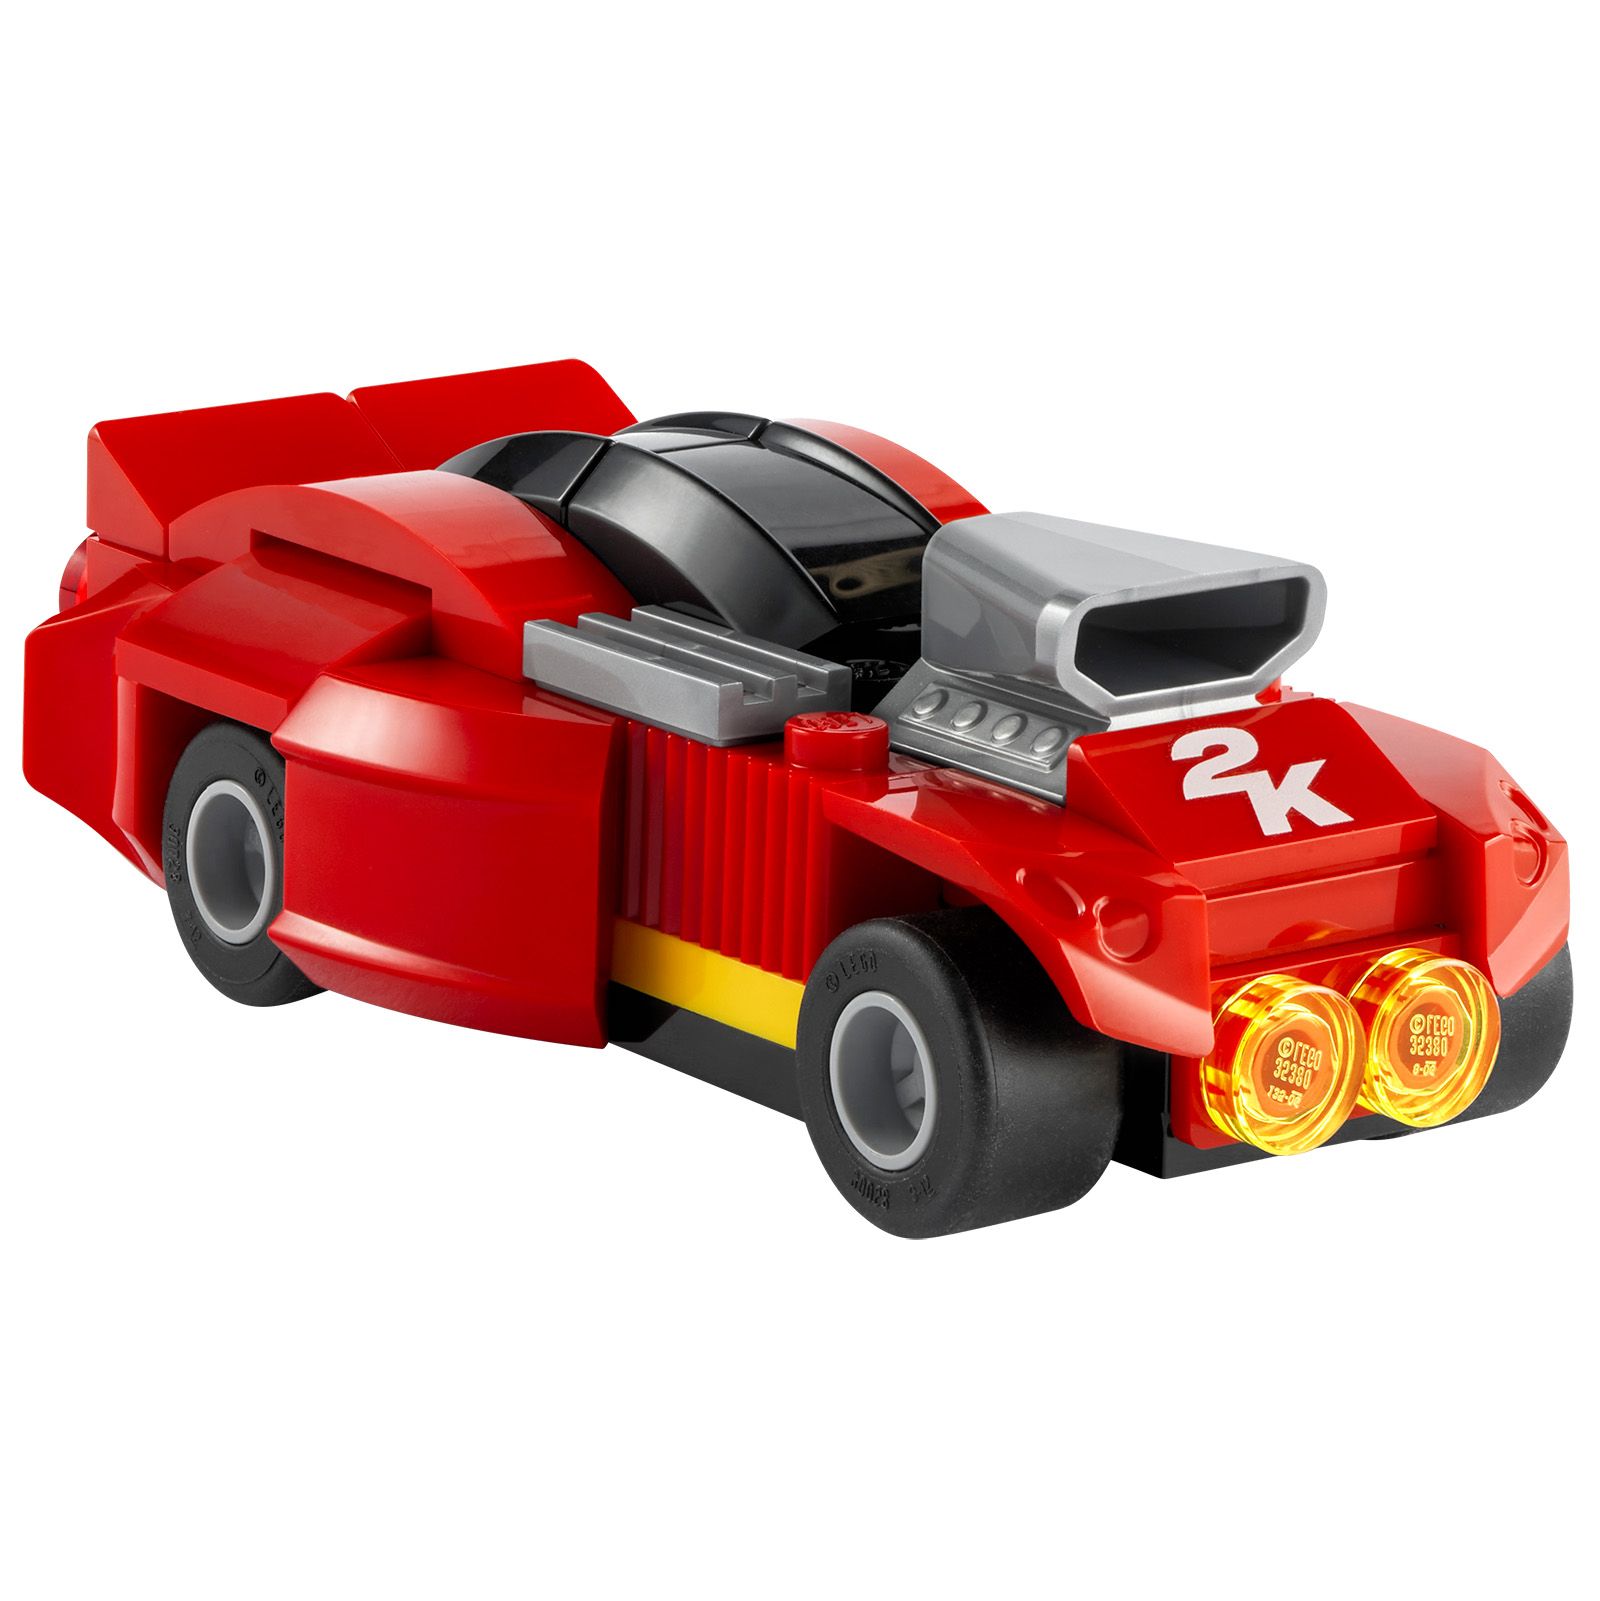 लेगो 2K ड्राइव: एक ट्रेलर और एक लेगो उत्पाद जो वीडियो गेम के कुछ भौतिक संस्करणों के साथ पेश किया जाता है